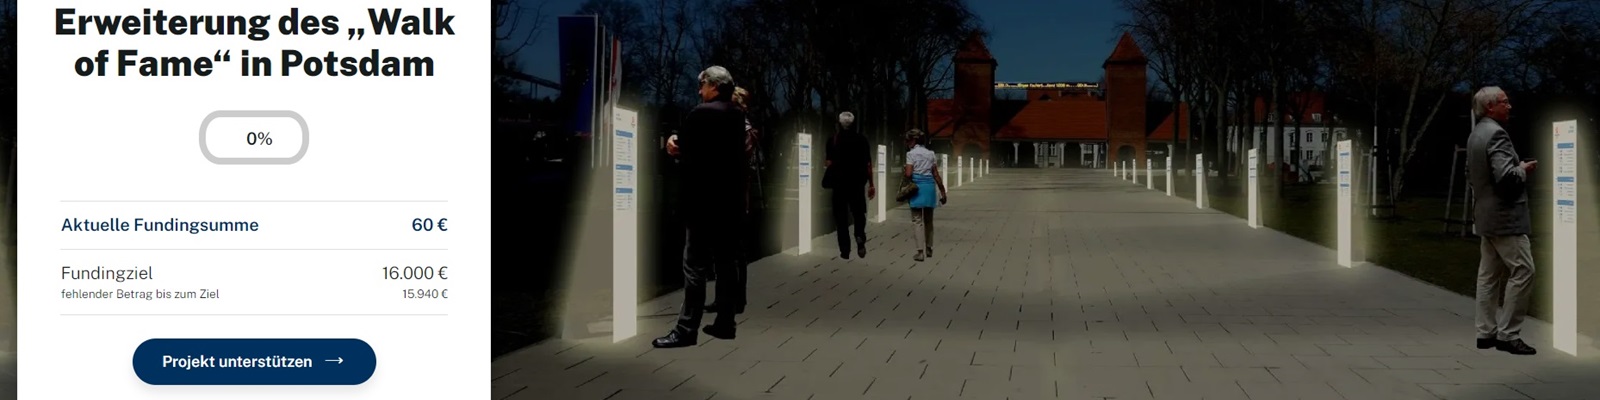 Crowdfunding-Kampagne für die Erweiterung des „Walk of Fame“ in Potsdam